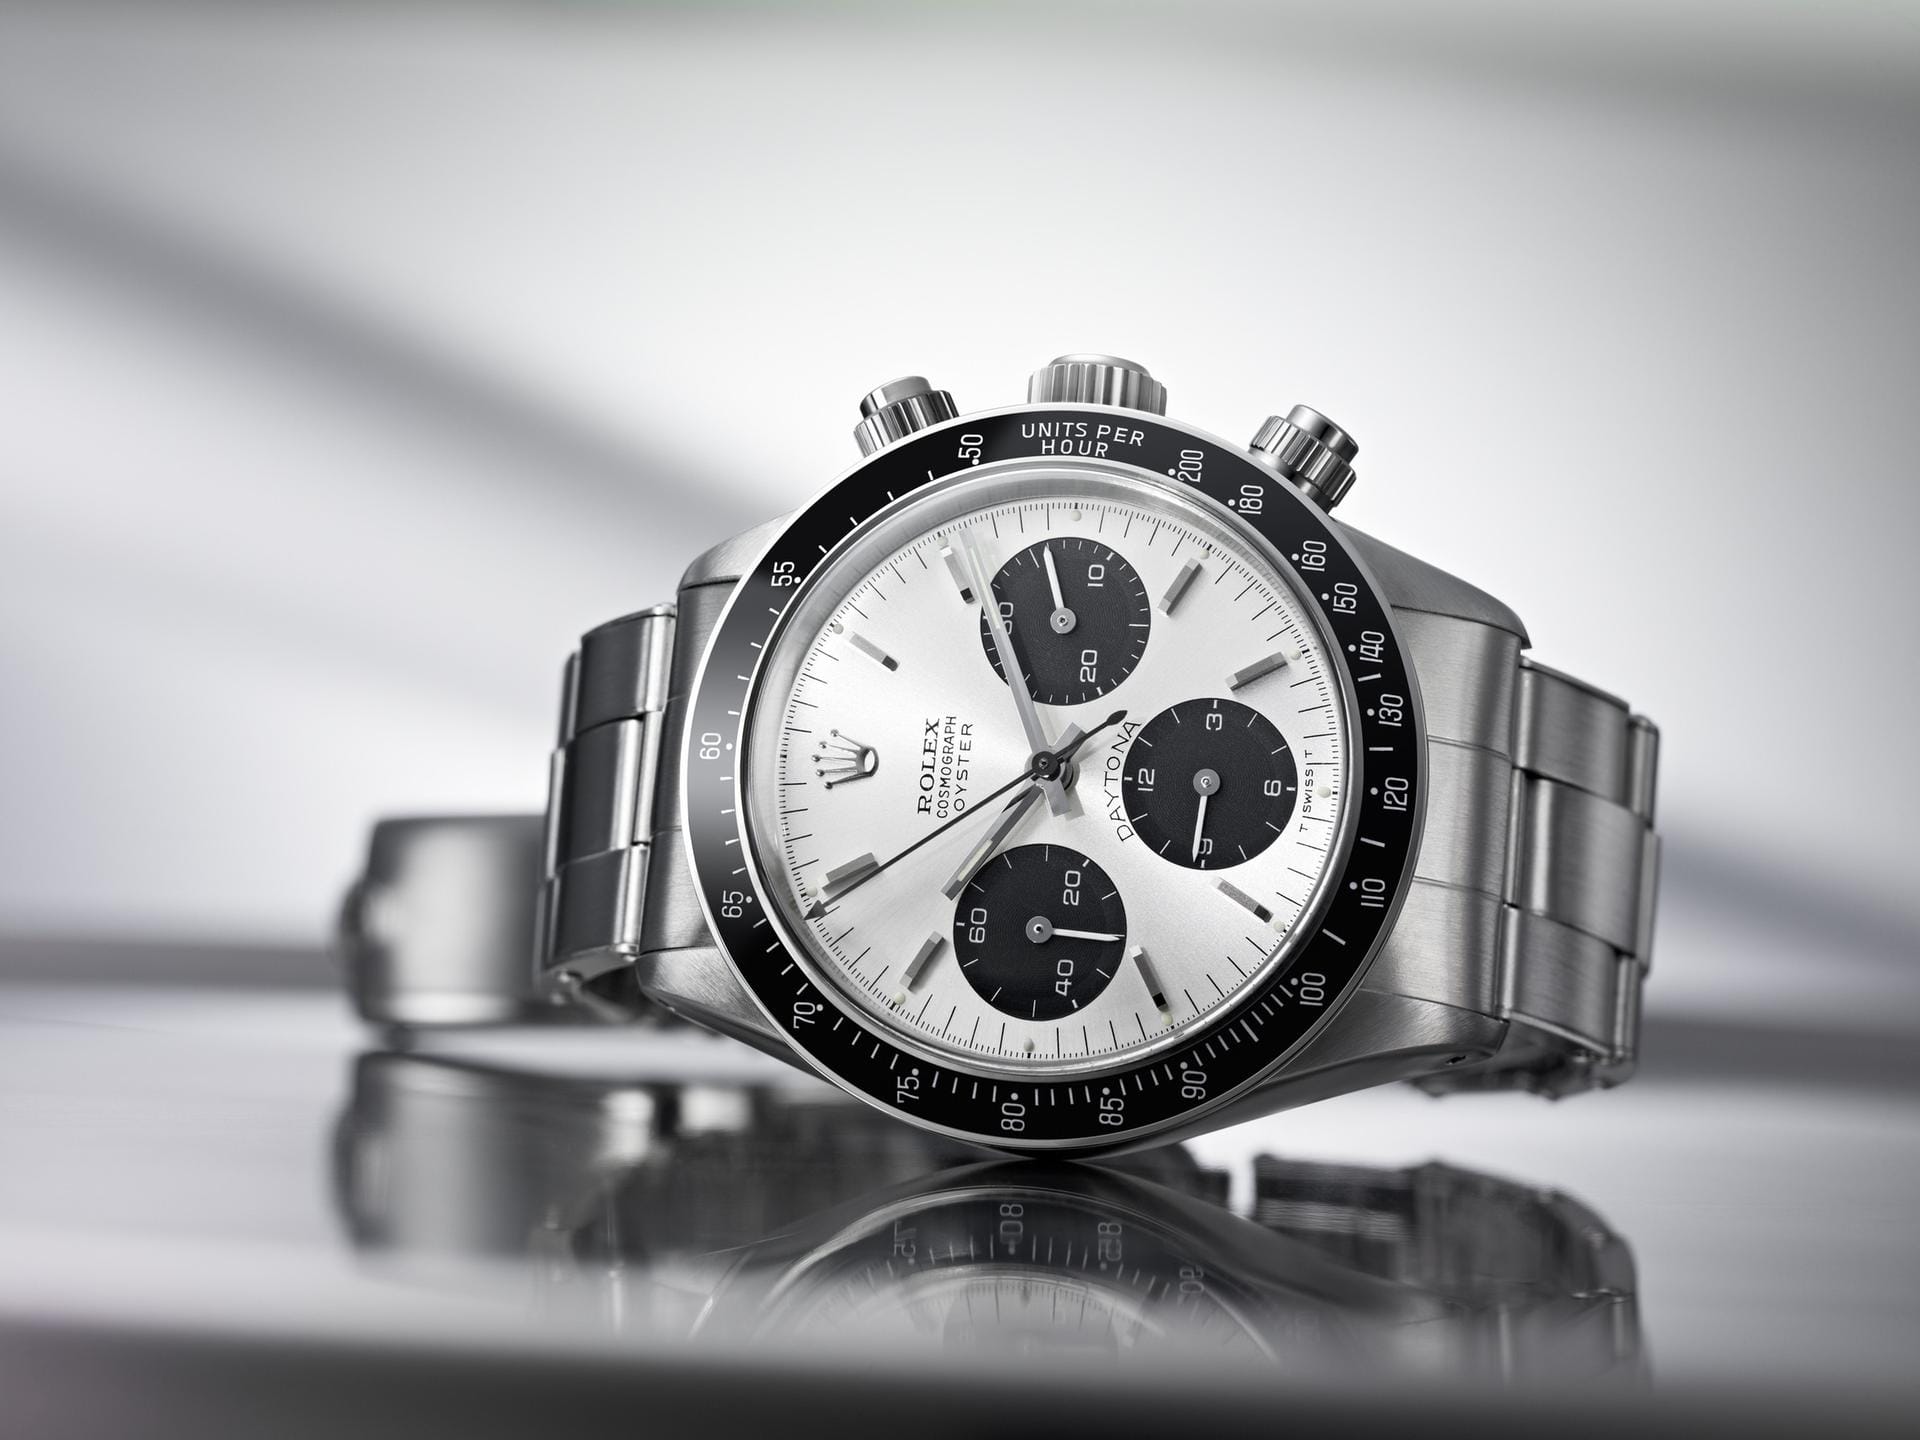 Die Rolex Daytona Cosmograph aus dem Jahr 1965 gehört zu den Uhrenlegenden und kostet heute mehr als 50.000 Euro. Solche Uhren werden oft gefälscht – denn die Fälscher verdienen damit riesige Summen.